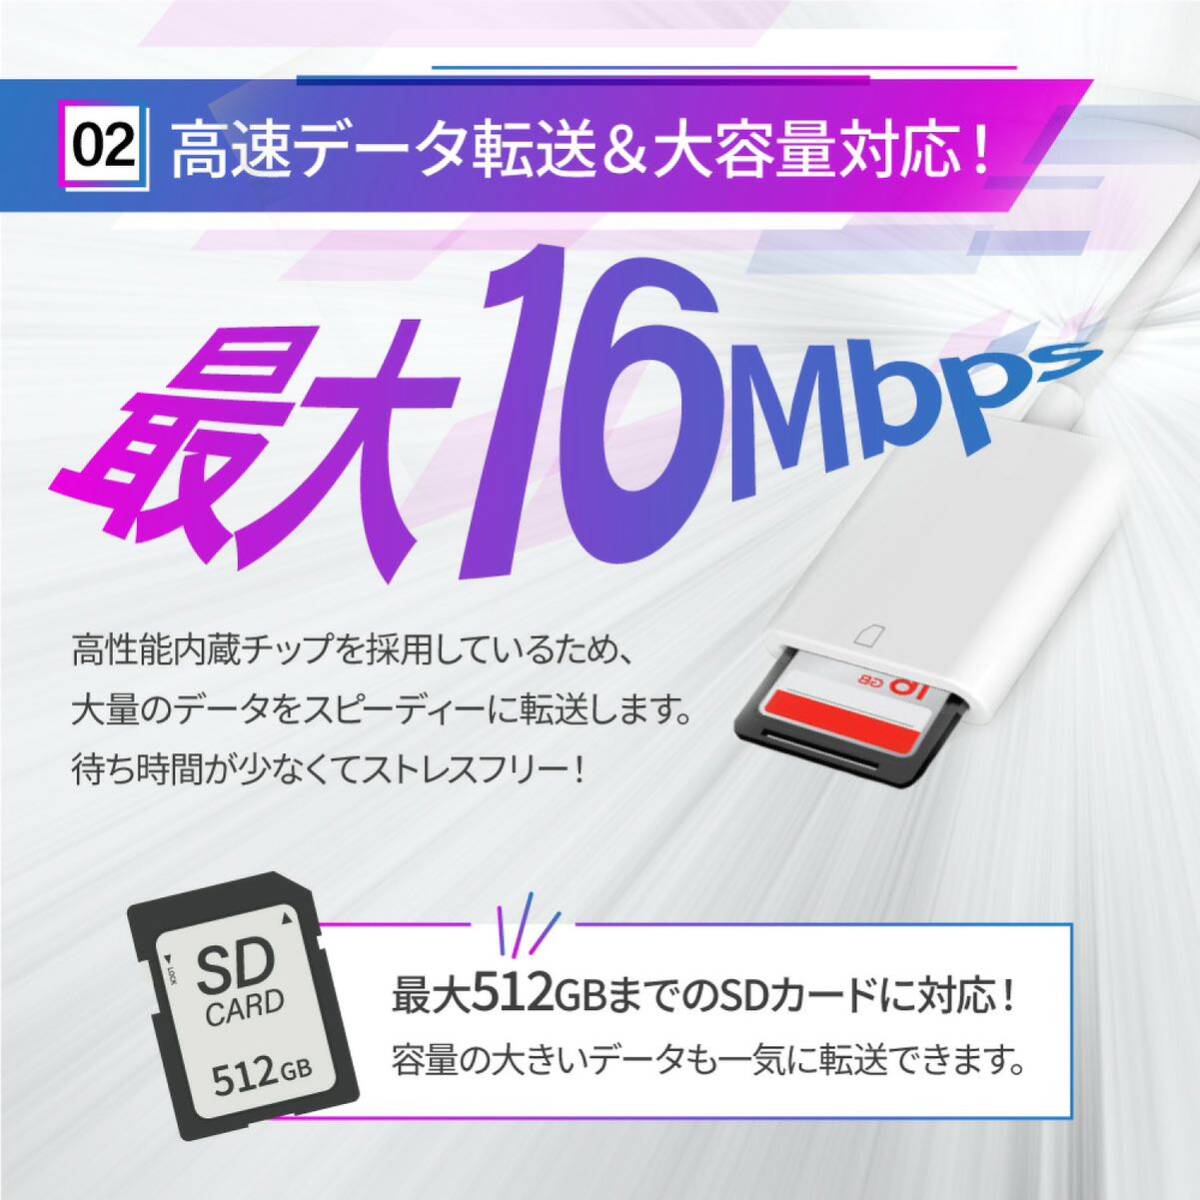 iphone ipad SDカードリーダー 2in1 カメラ SD/TF対応可能 変換アダプター iOS 双方向データ転送 写真 ビデオ Word Excle PPT PDF 高速転送